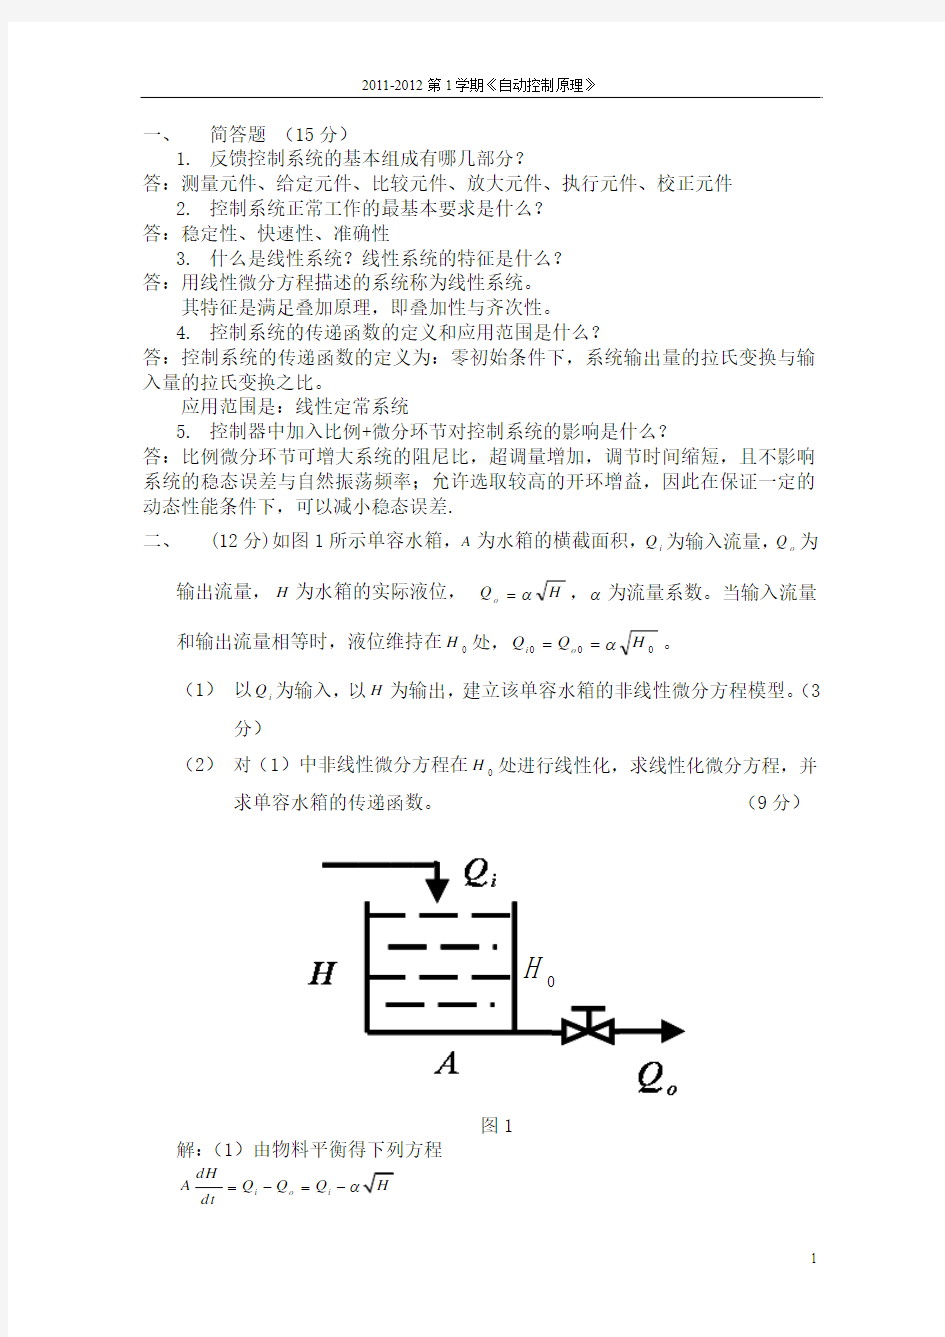 中国石油大学2011自动控制原理期中考试试题(答_案)